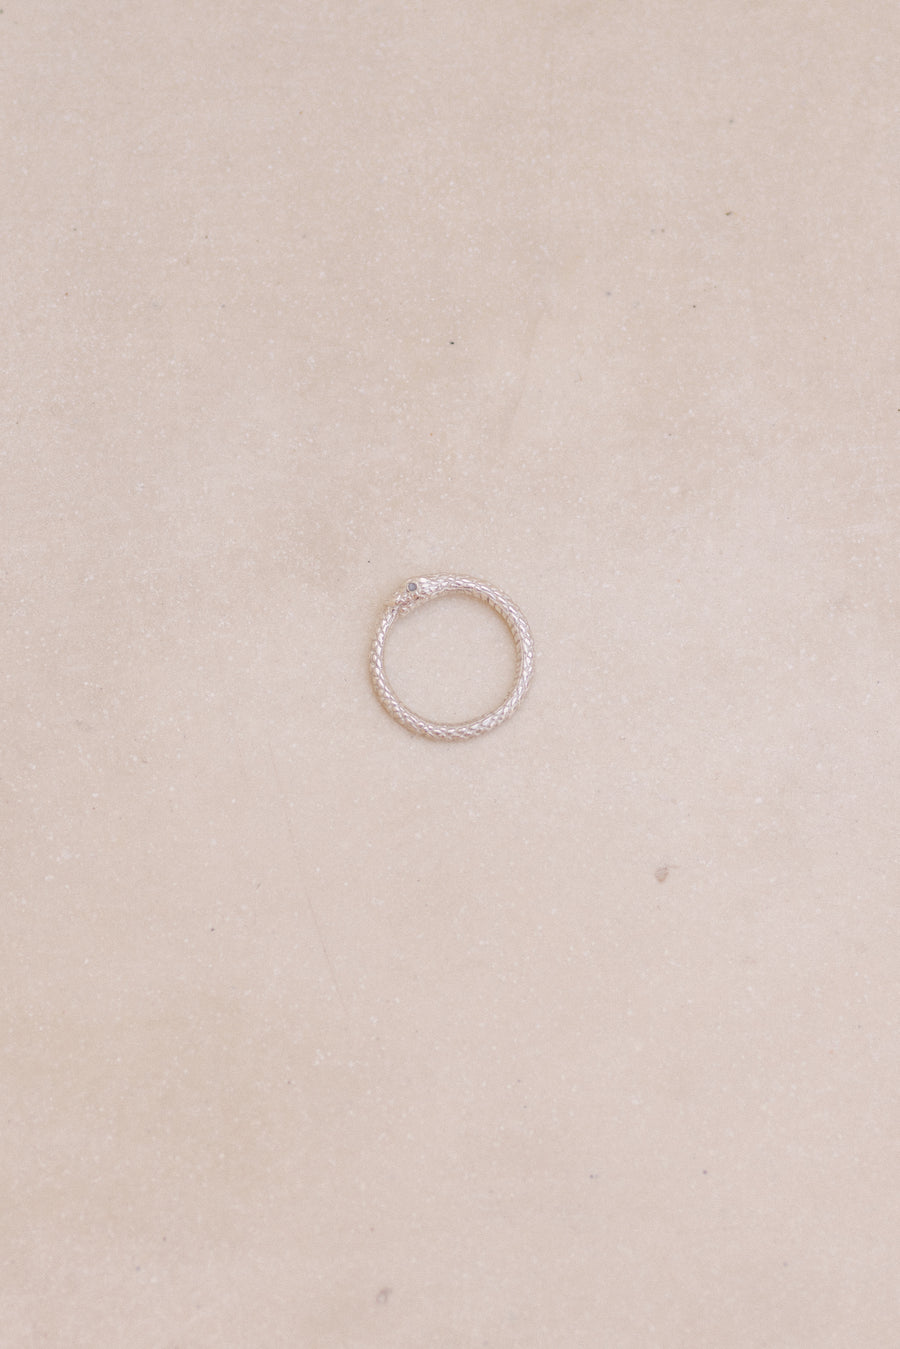 Ouroboros Ring/ Pendant